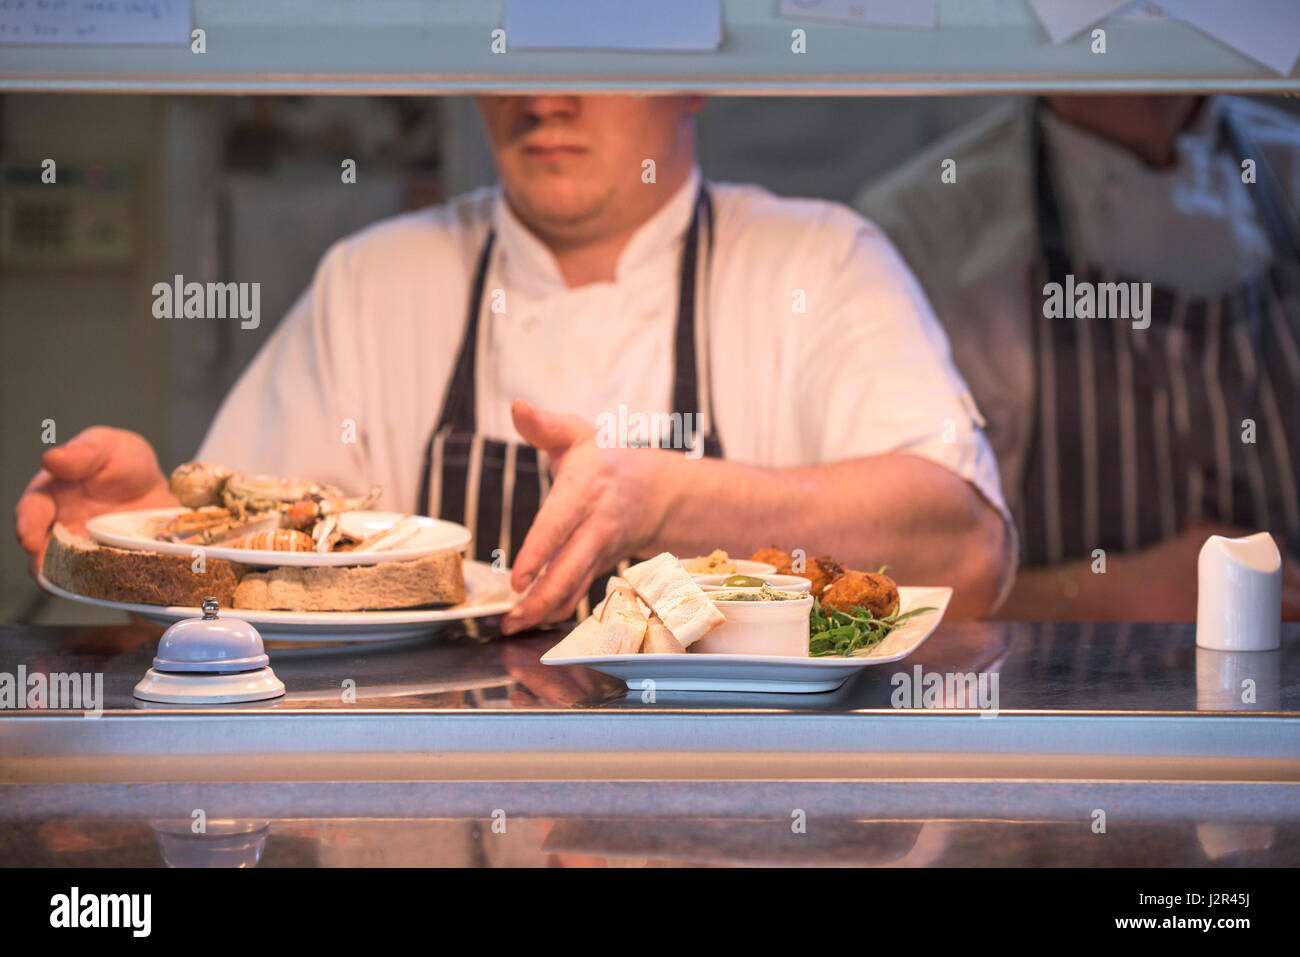 Les plaques d'aliments Restaurant passe la préparation des aliments Repas Chef de service alimentaire Manger des plats de l'industrie Banque D'Images